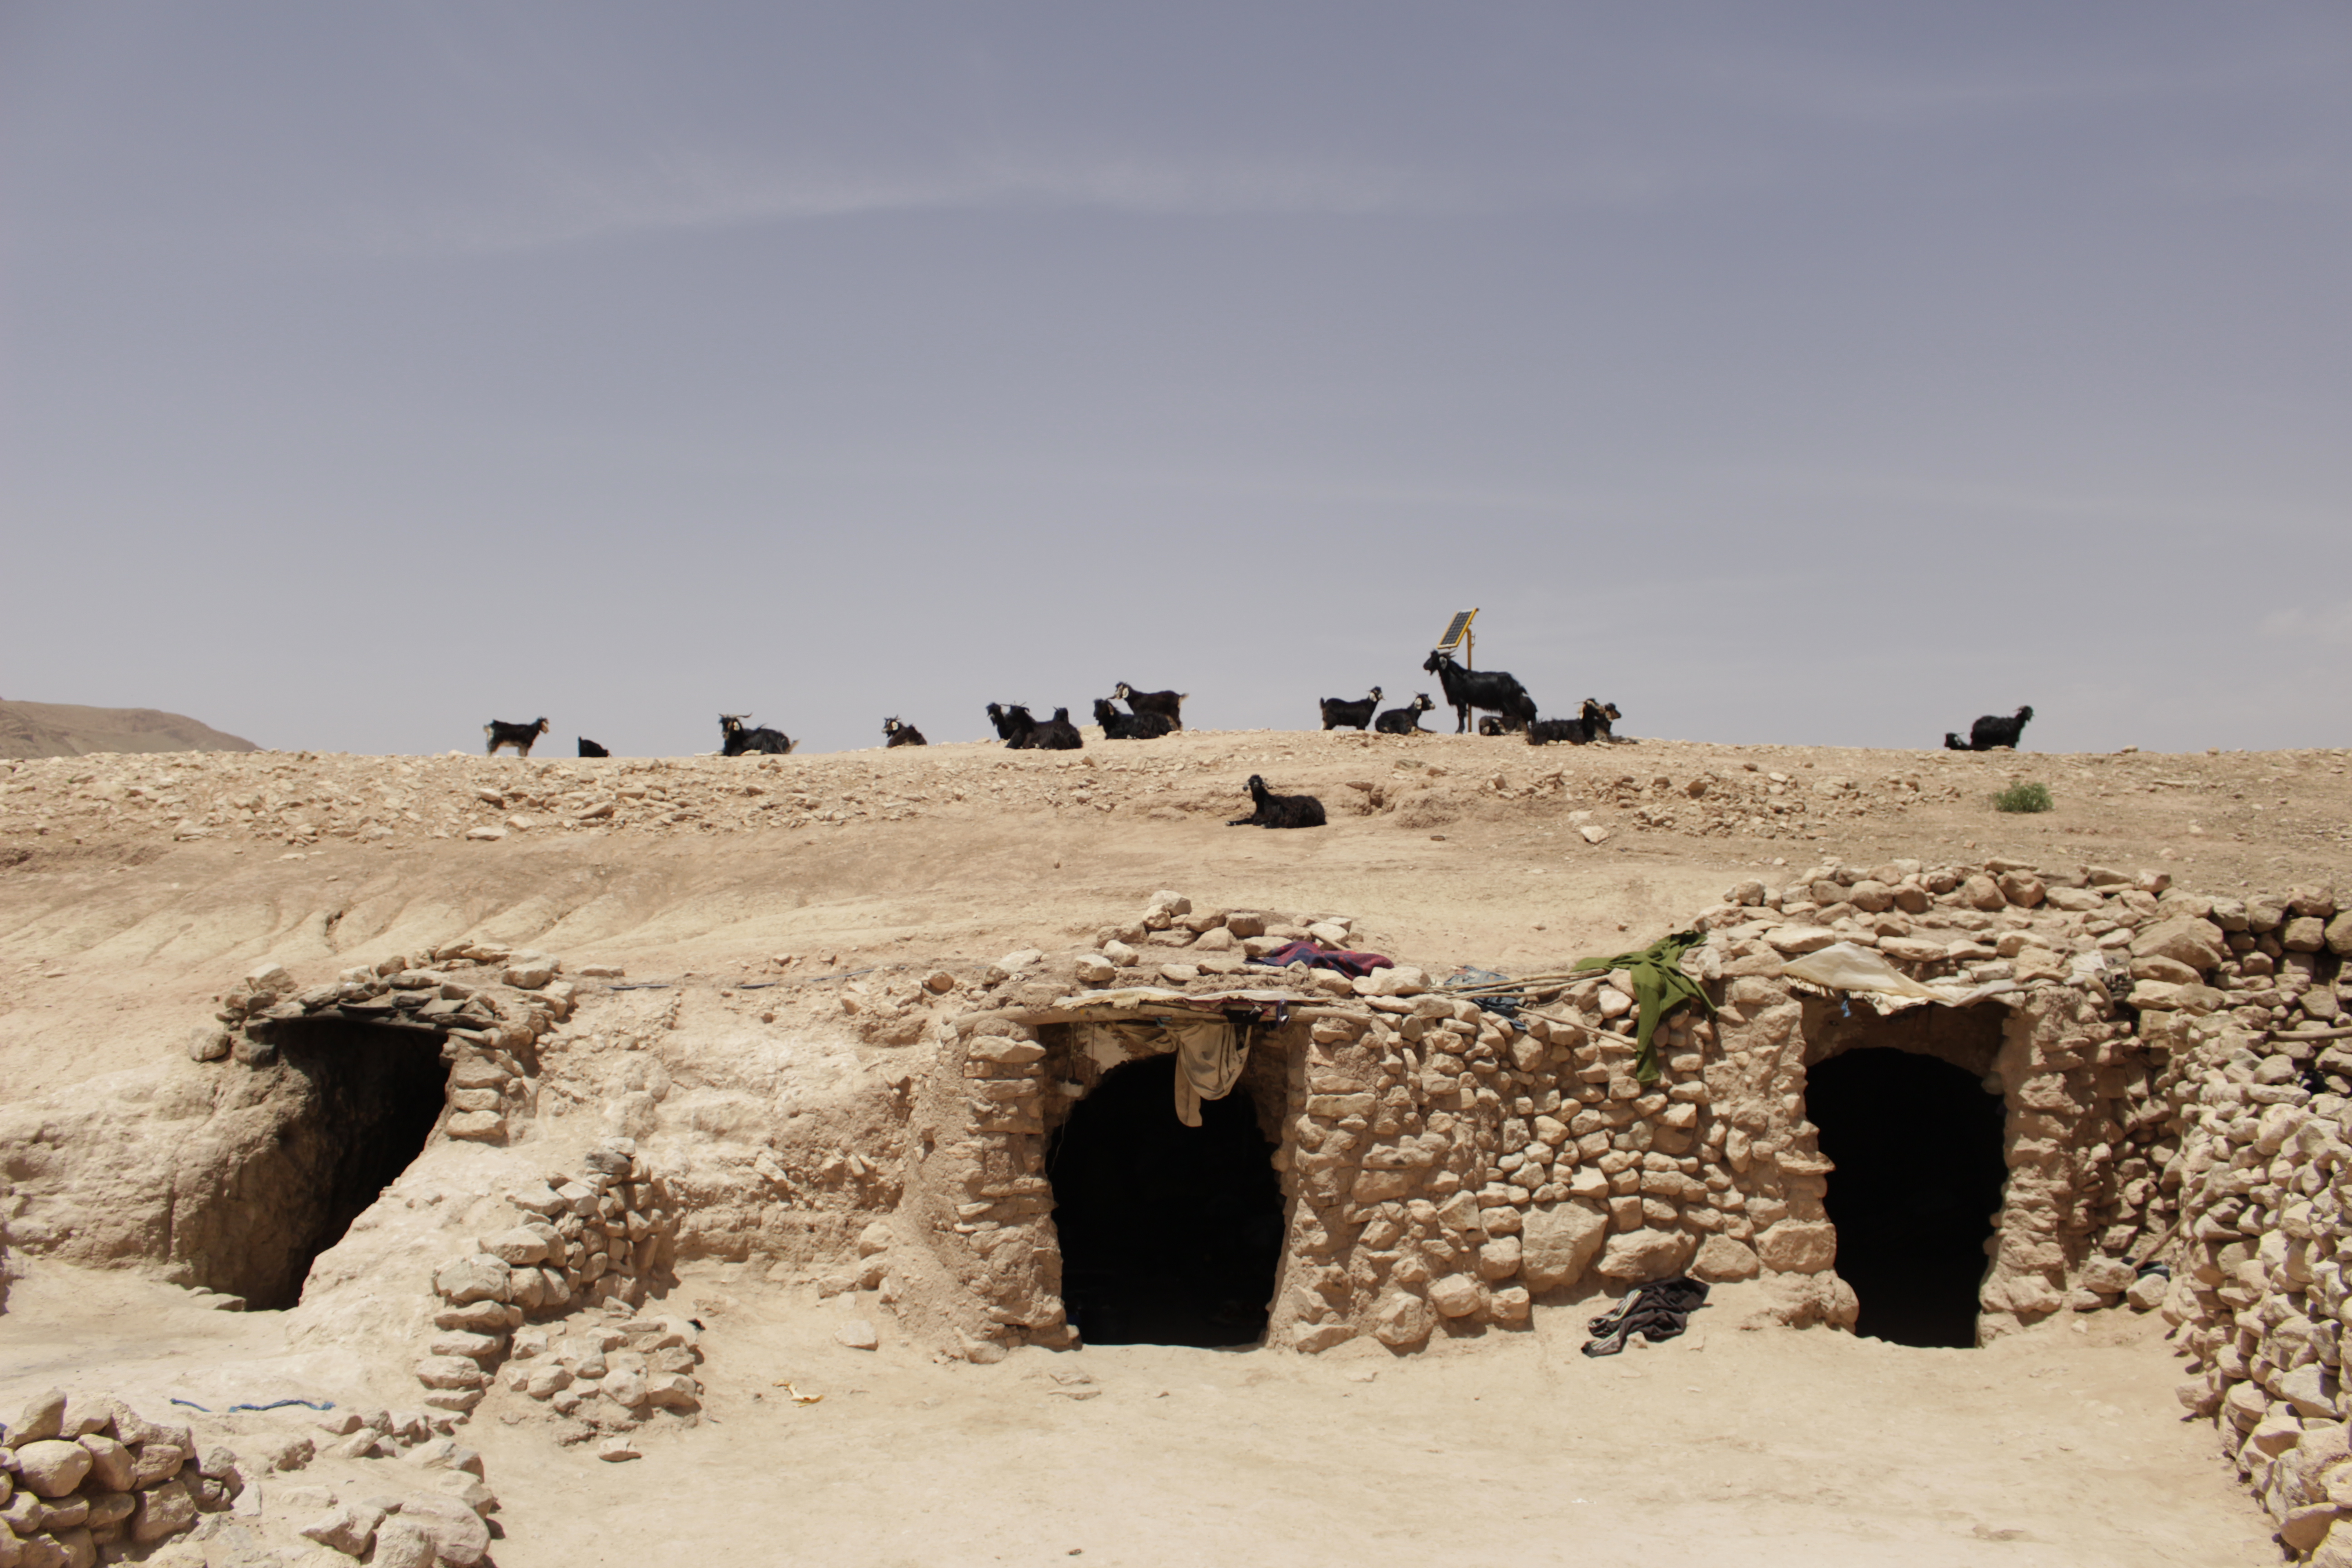 حقوق الصورة: وصال الشيخ - المغرب: تعيش عائشة مع ابنتها وزوجها وبعض أحفادها على بُعد ساعتين مشياً على الأقدام، إذا أخذنا الطريق من قرية "بوتغرار"، جنوب شرق المغرب، إلى الجبال المجاورة لها. 